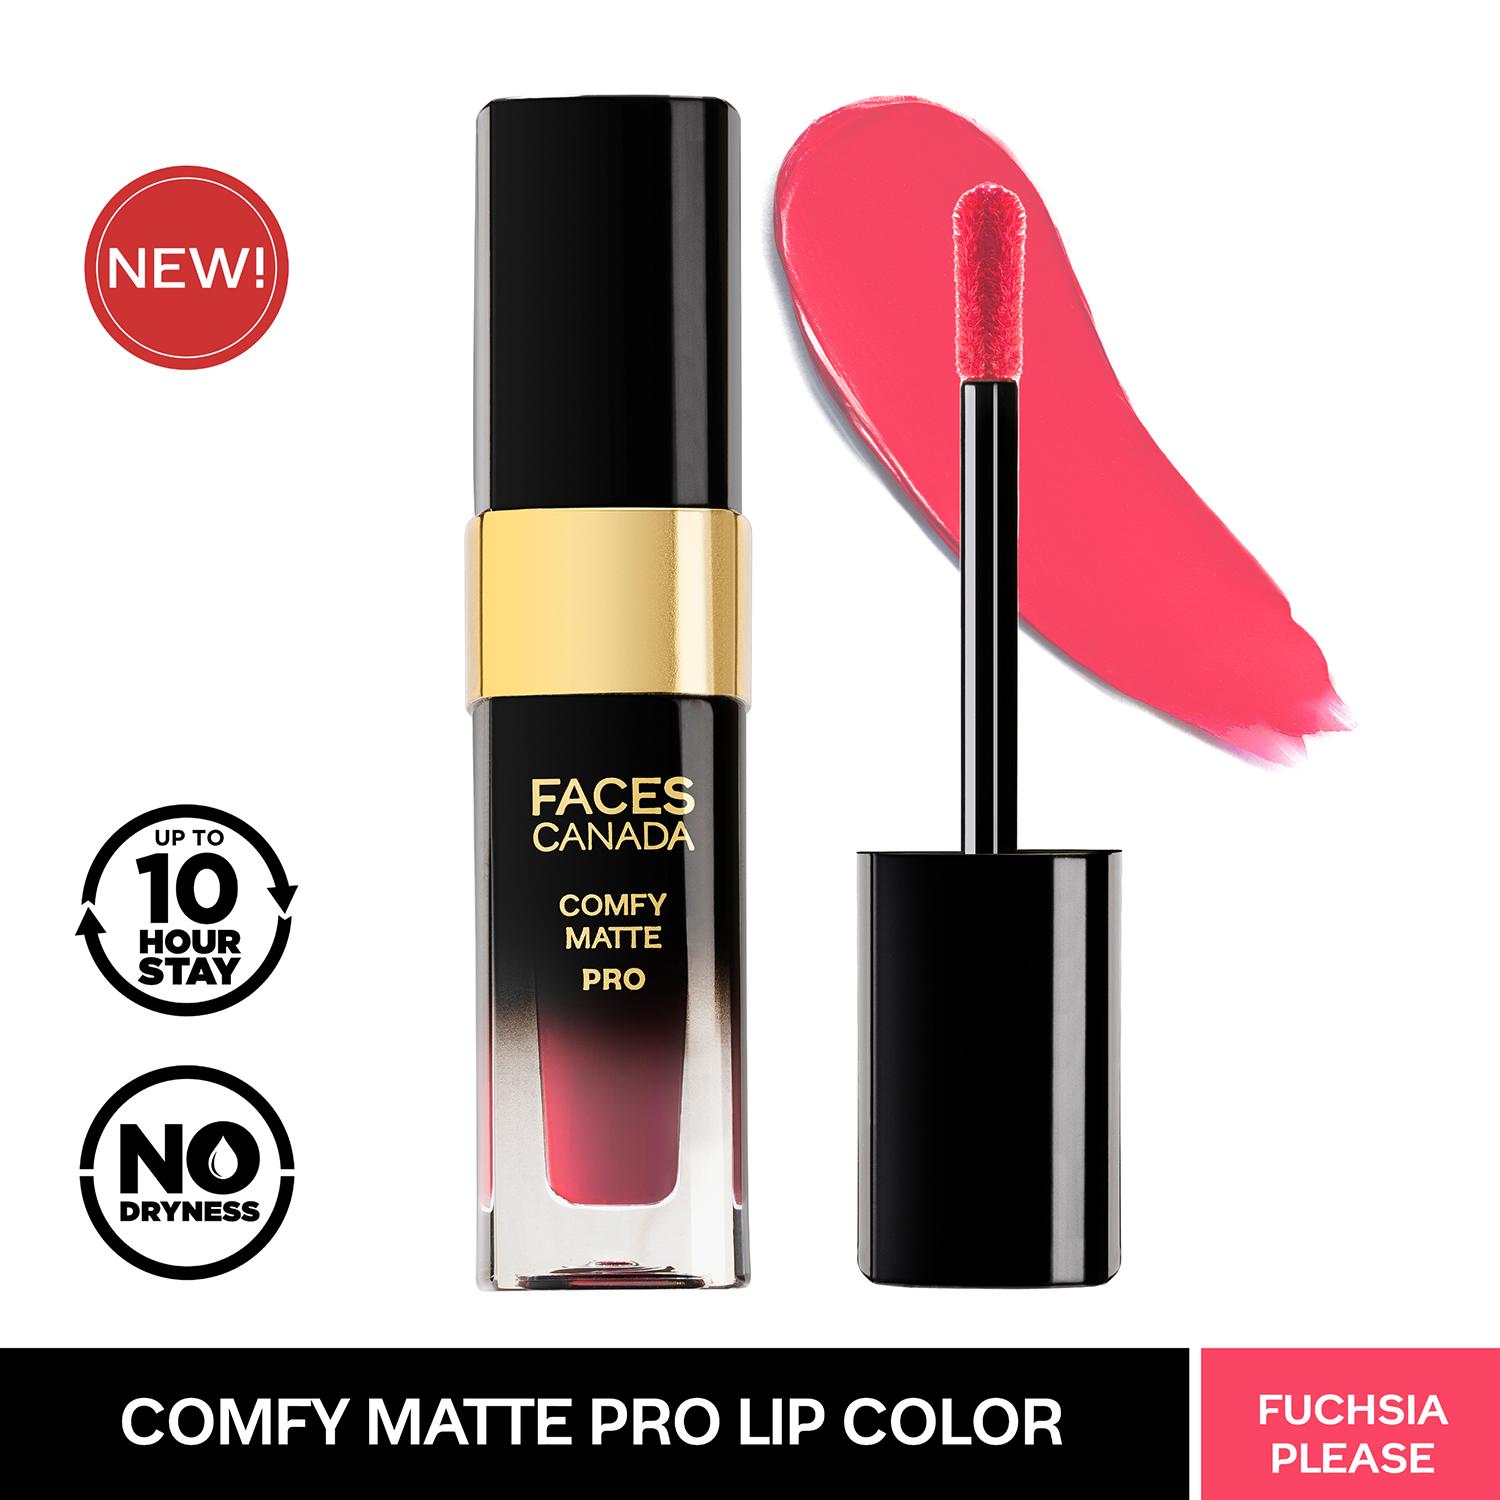 Faces Canada | Faces Canada Comfy Matte Pro Liquid Lipstick - Fuchsia Please 06, 10HR Stay, No Dryness (5.5 ml)